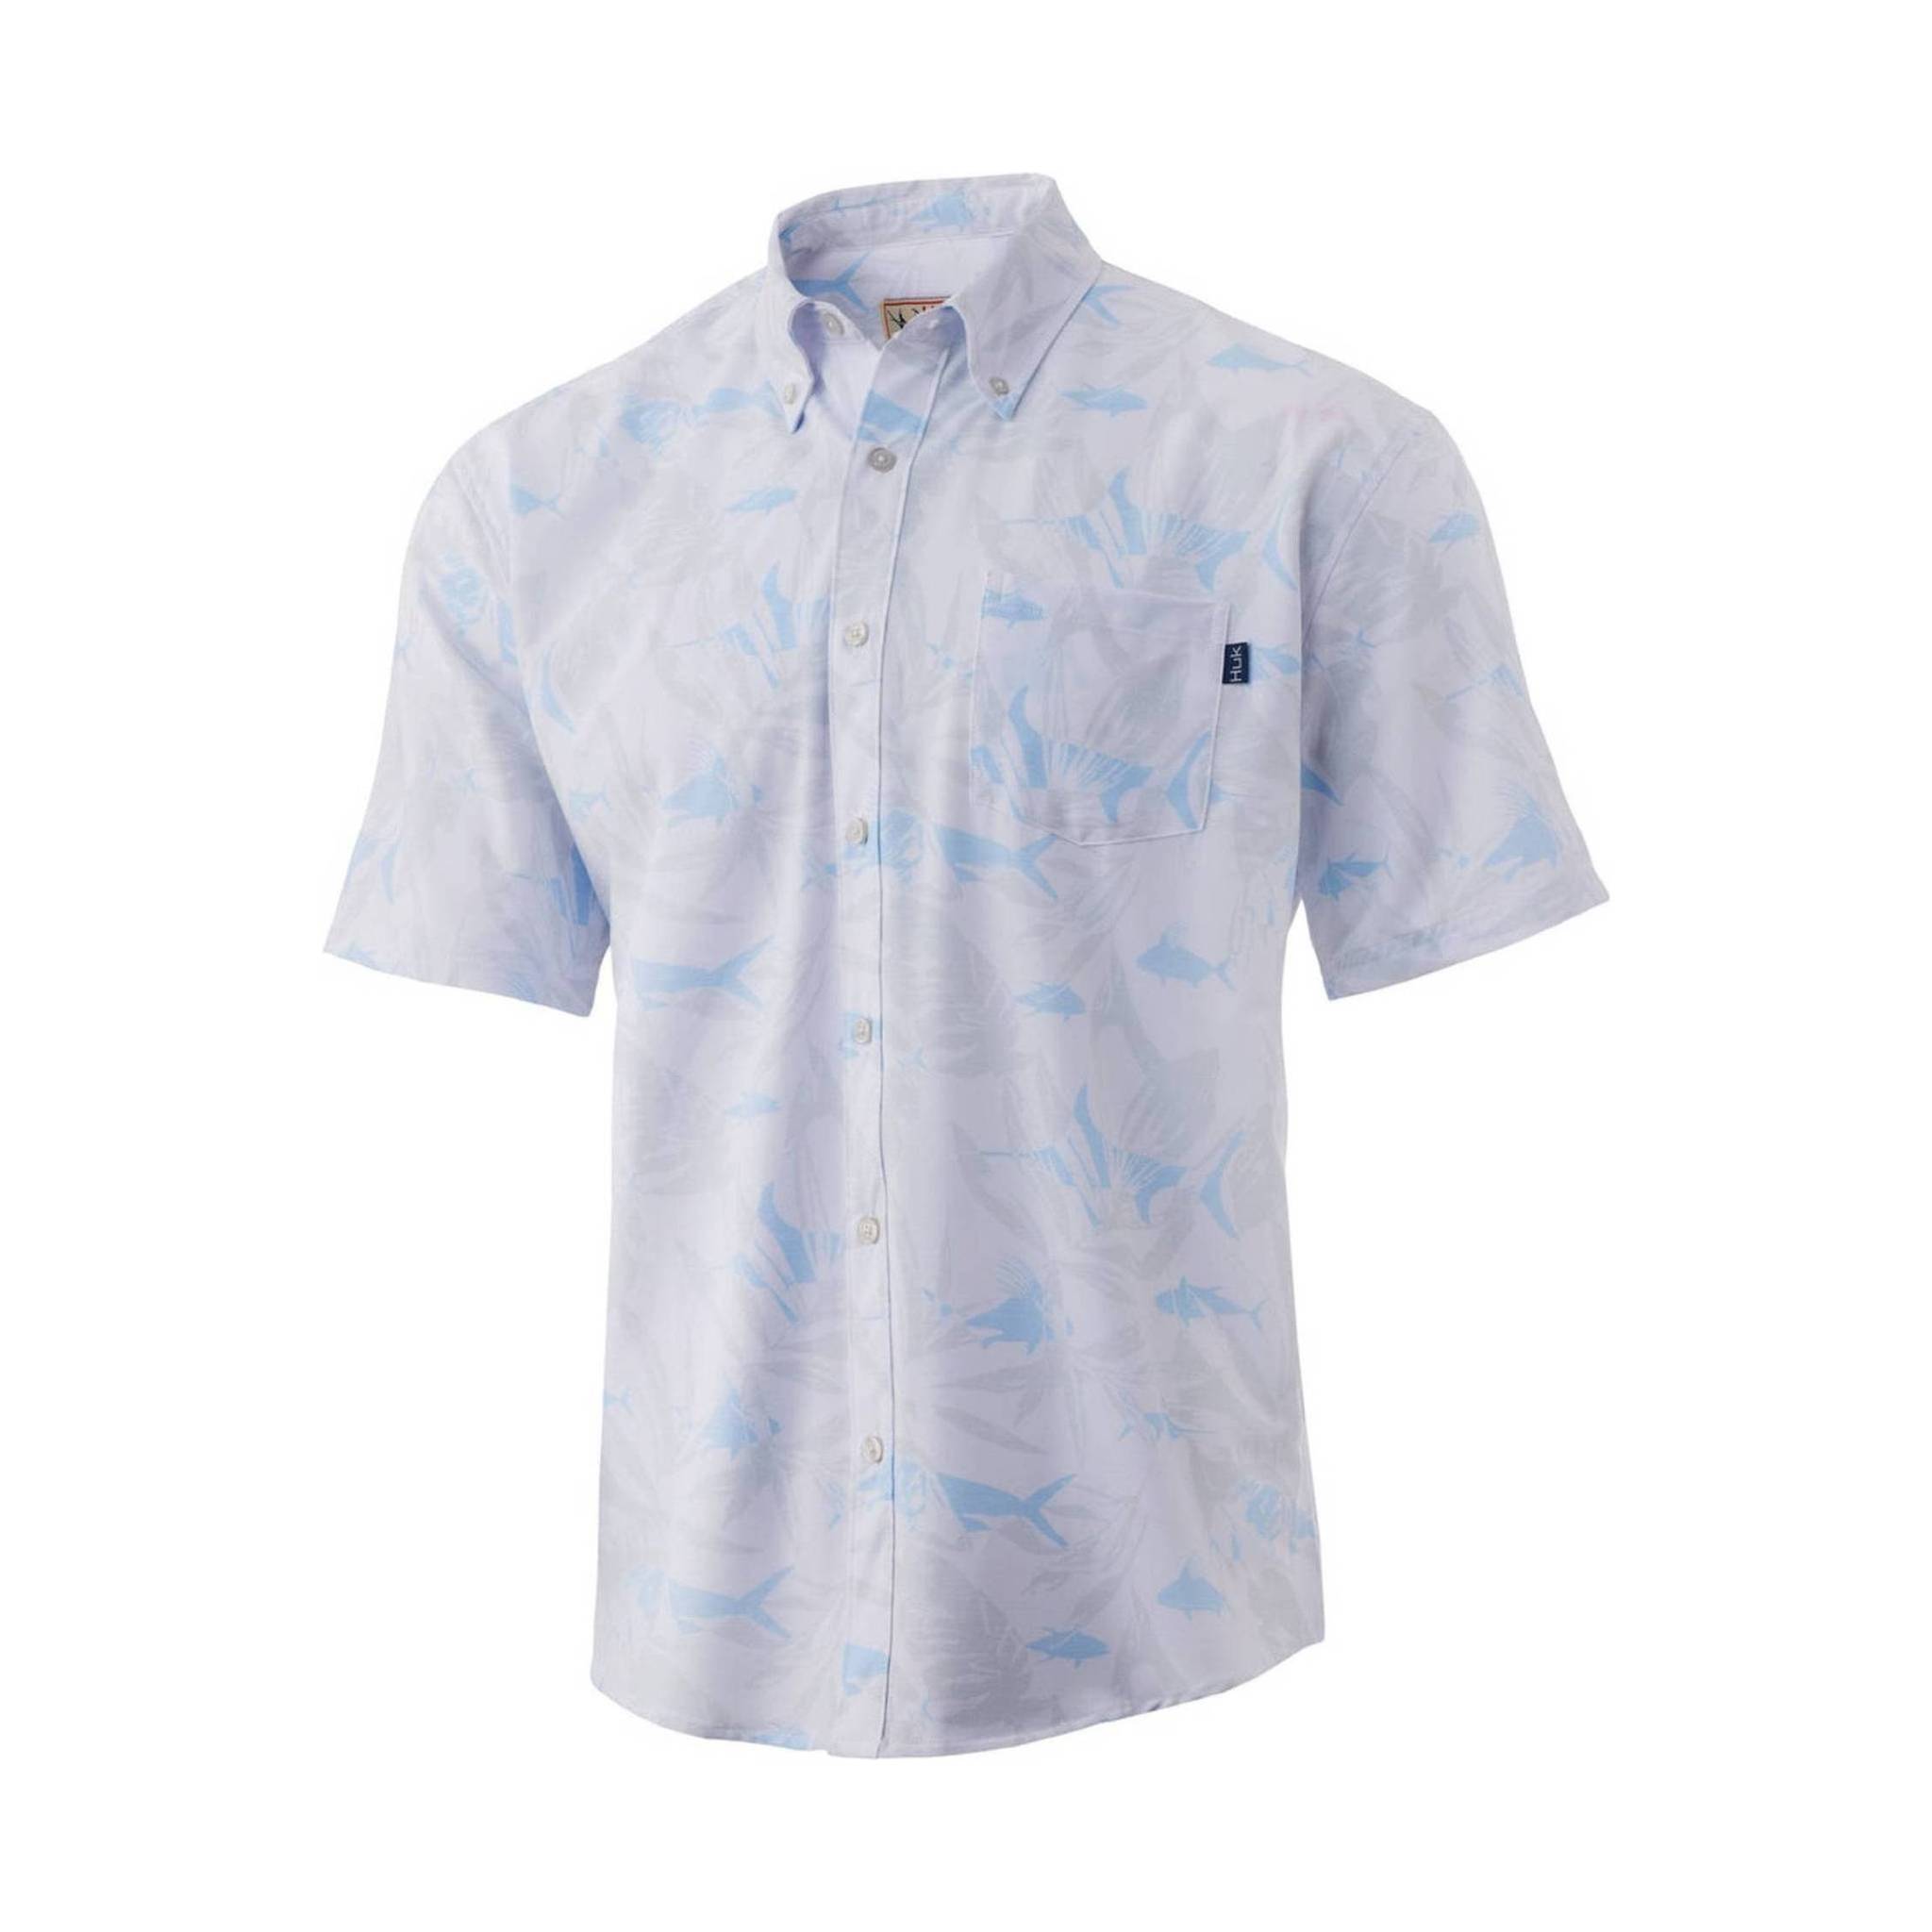 Huk Men's Kona Ocean Palm Button-Down Shirt - White/Blue M / White